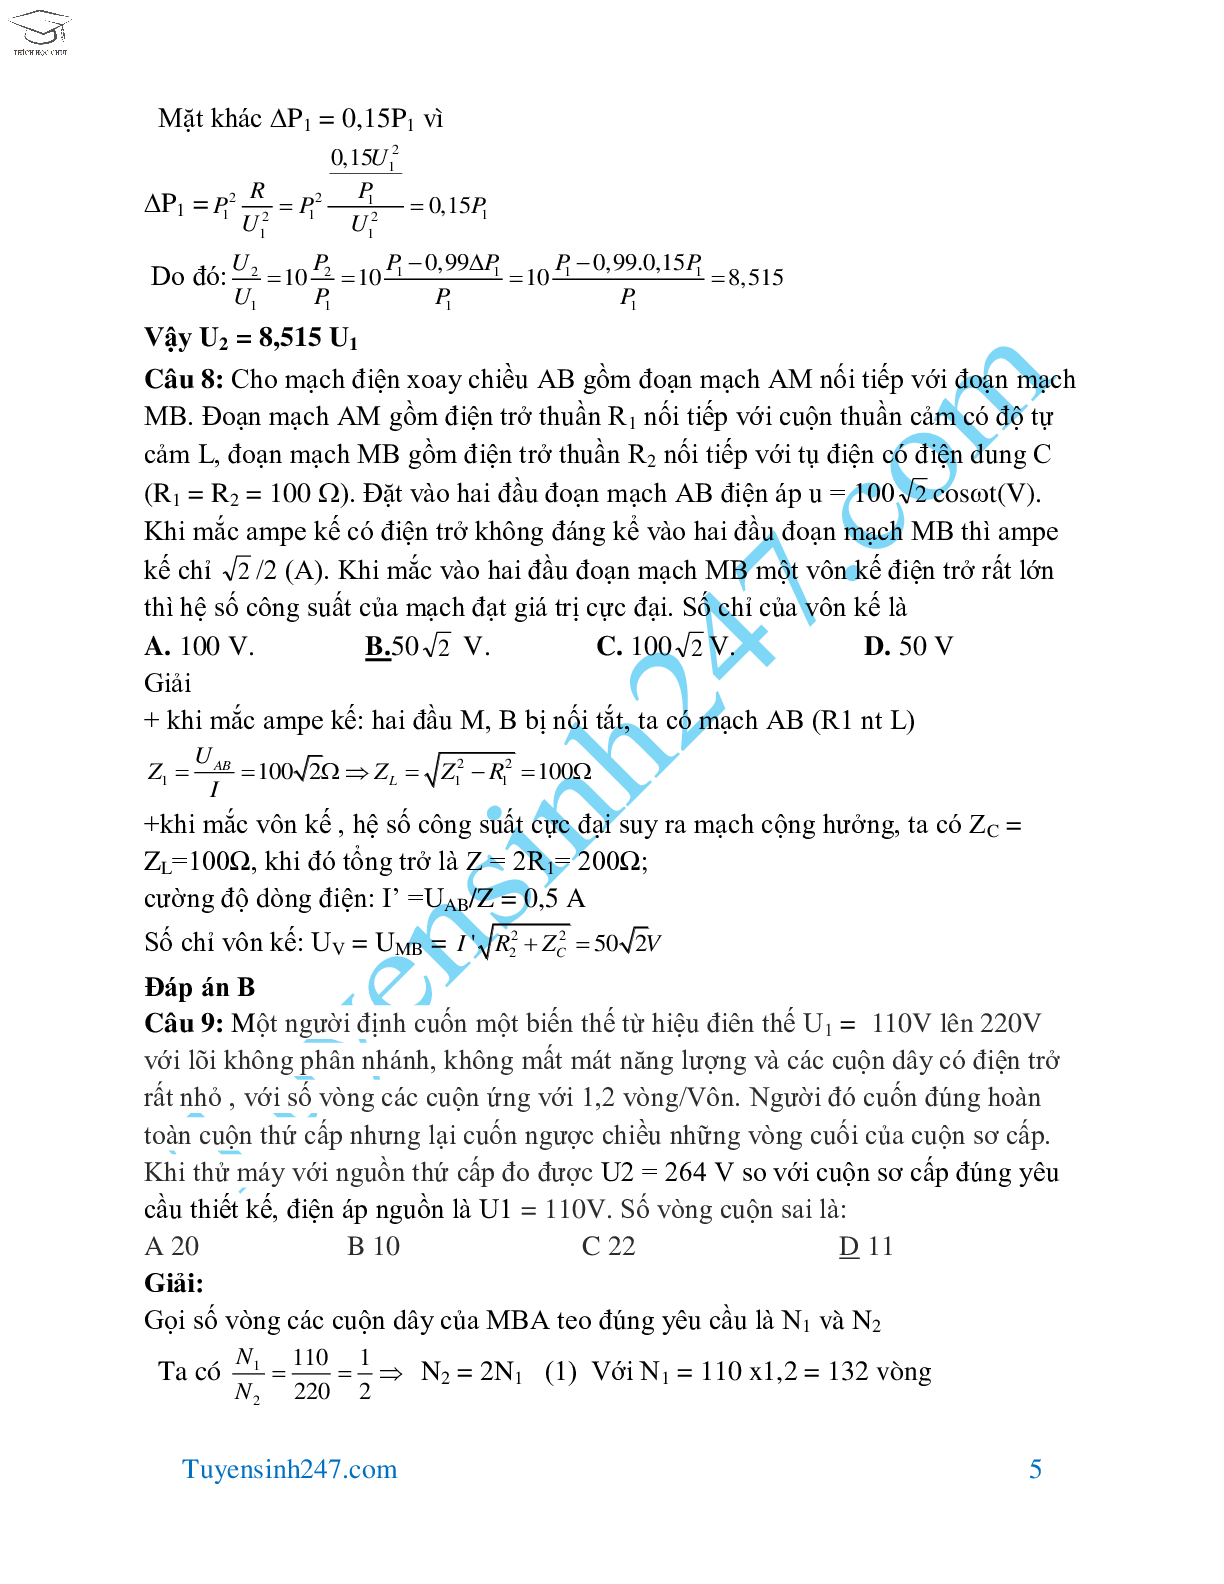 70 bài tập dòng điện xoay chiều hay và khó môn Vật Lý lớp 12 (trang 5)